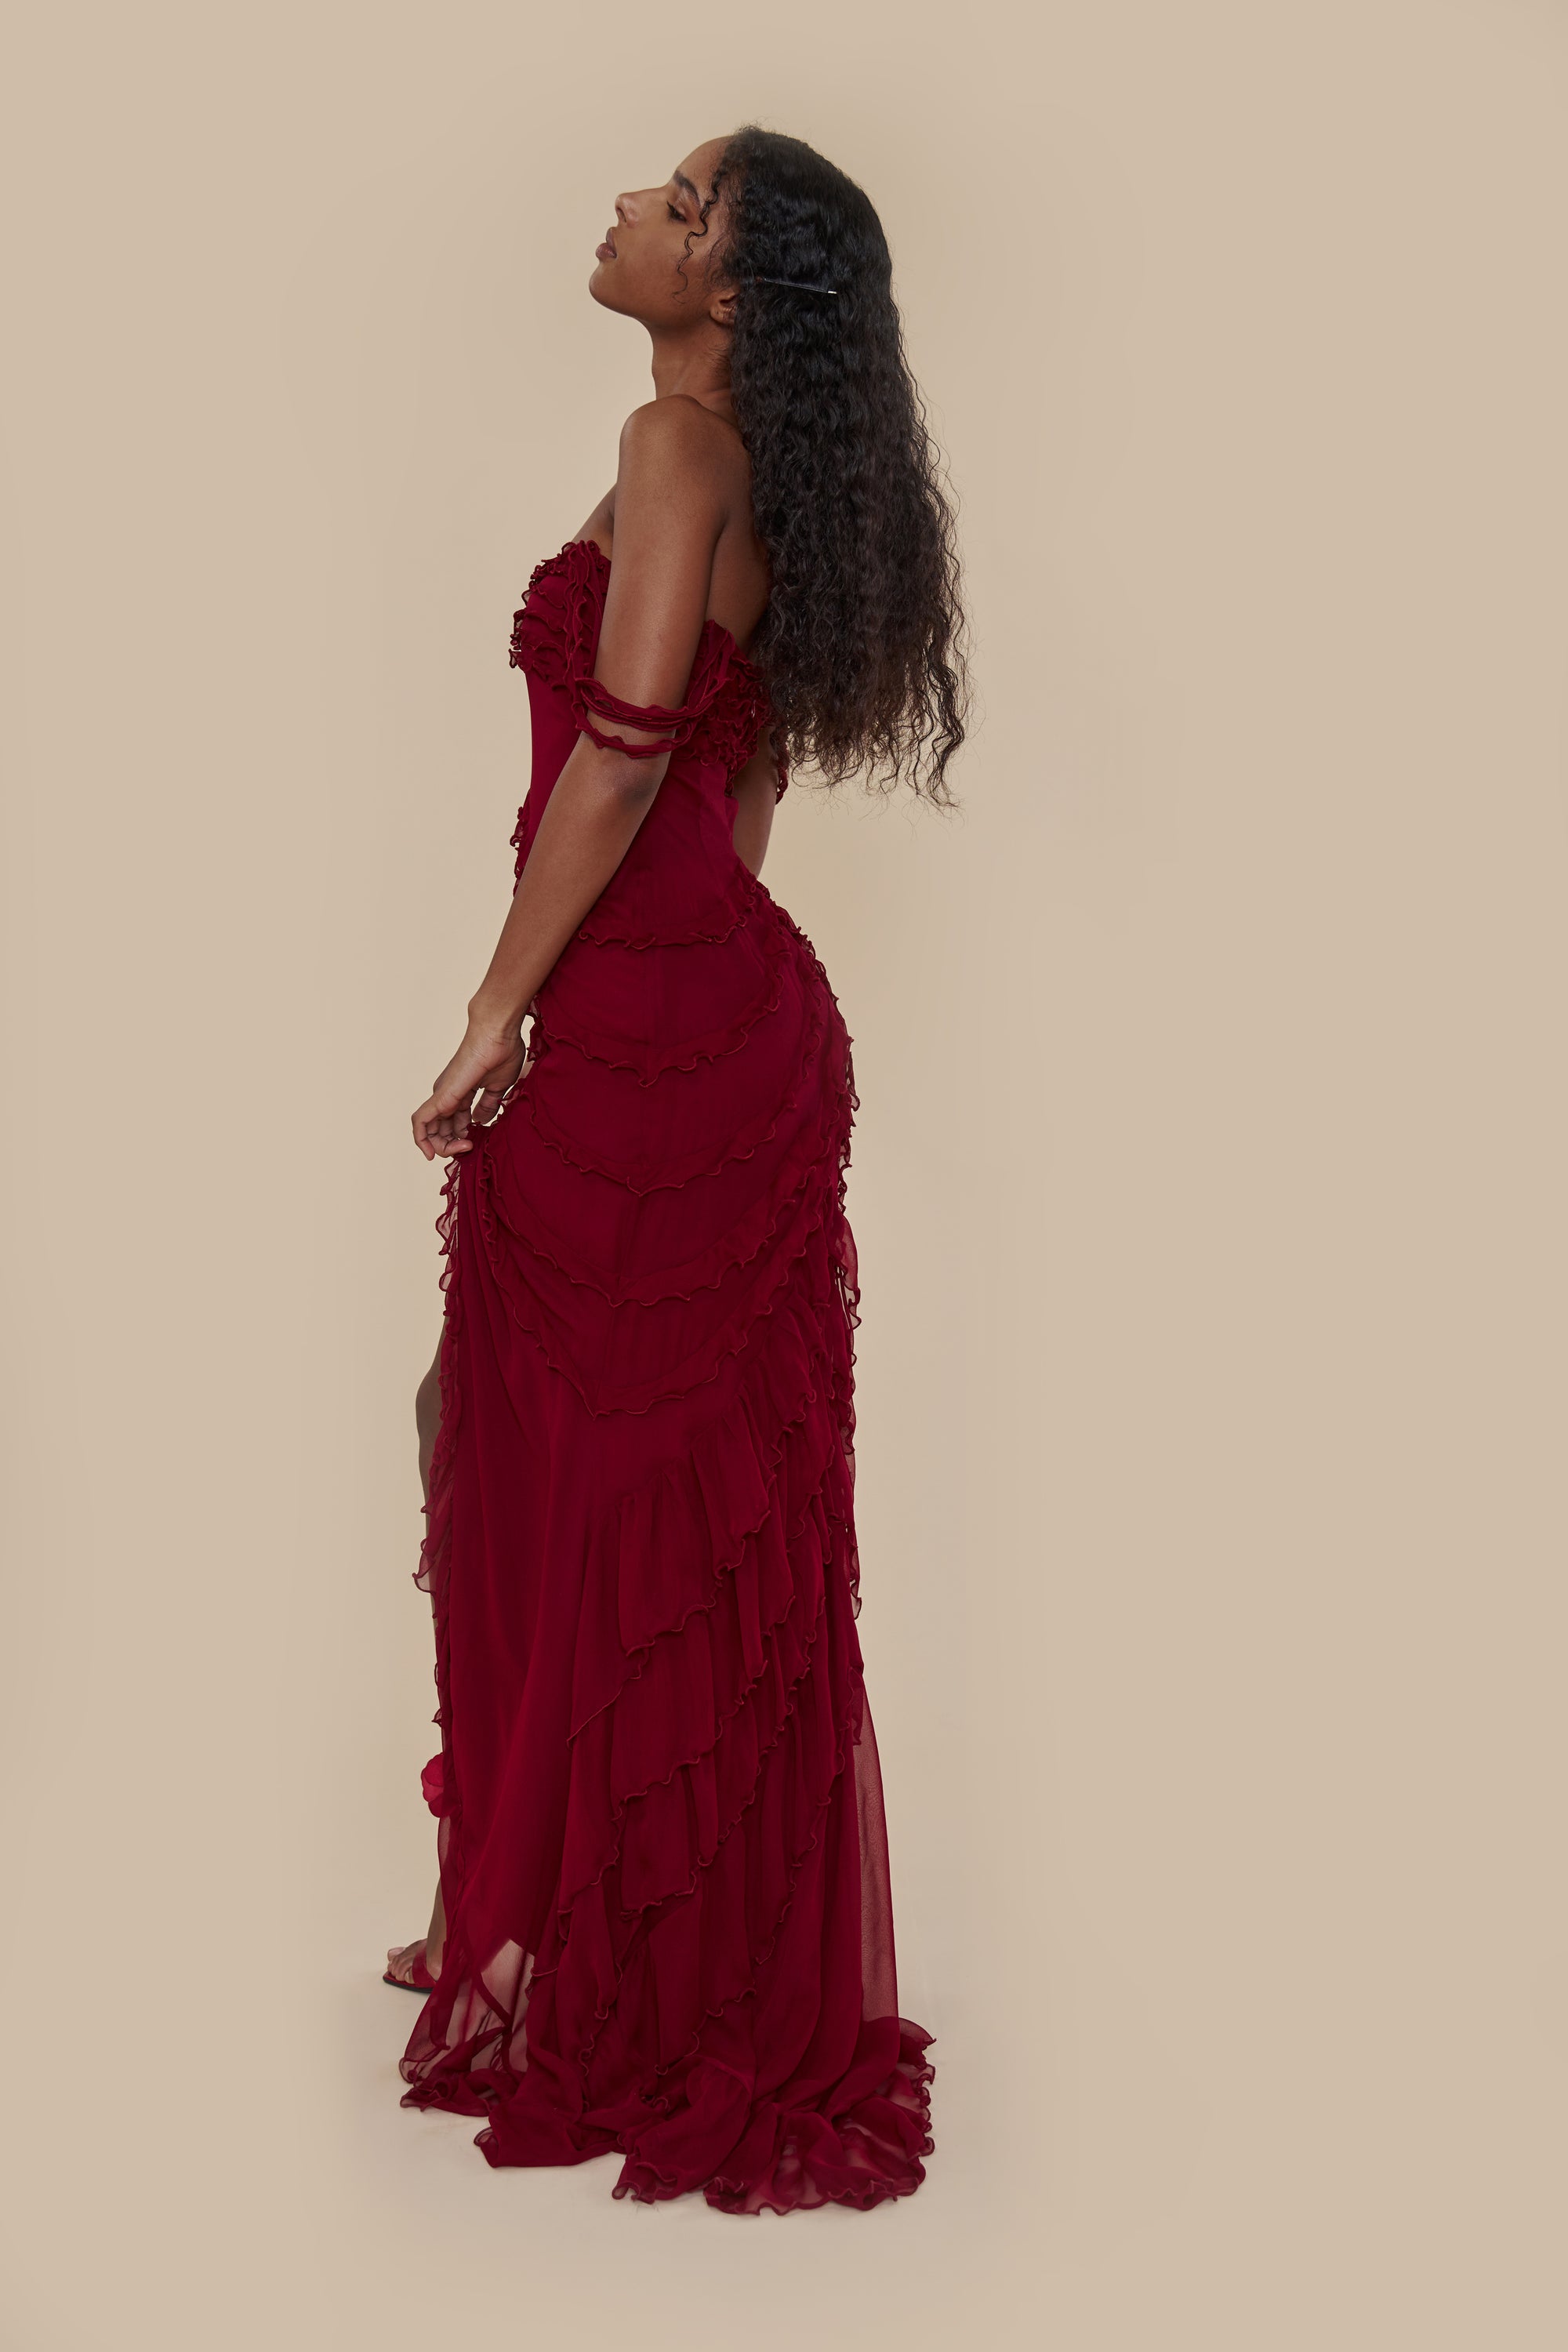 Sheer Ruffled Maxi Dress In Red  Maxi dress, Ruffled maxi dress, Lace top  gown